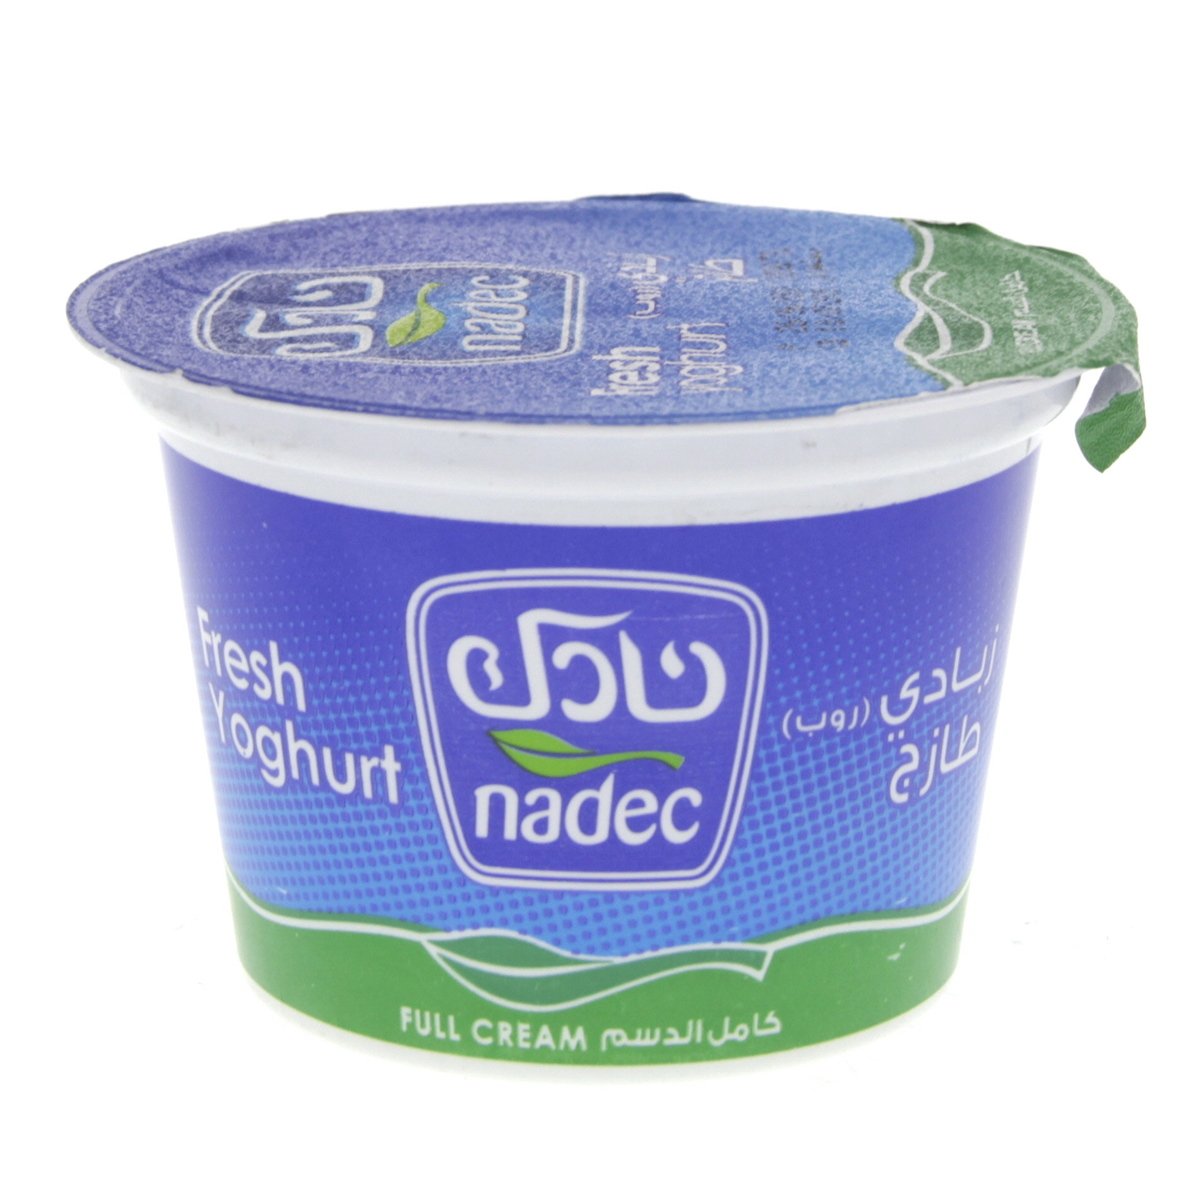 Nadec Fresh Yoghurt Full Fat 170g